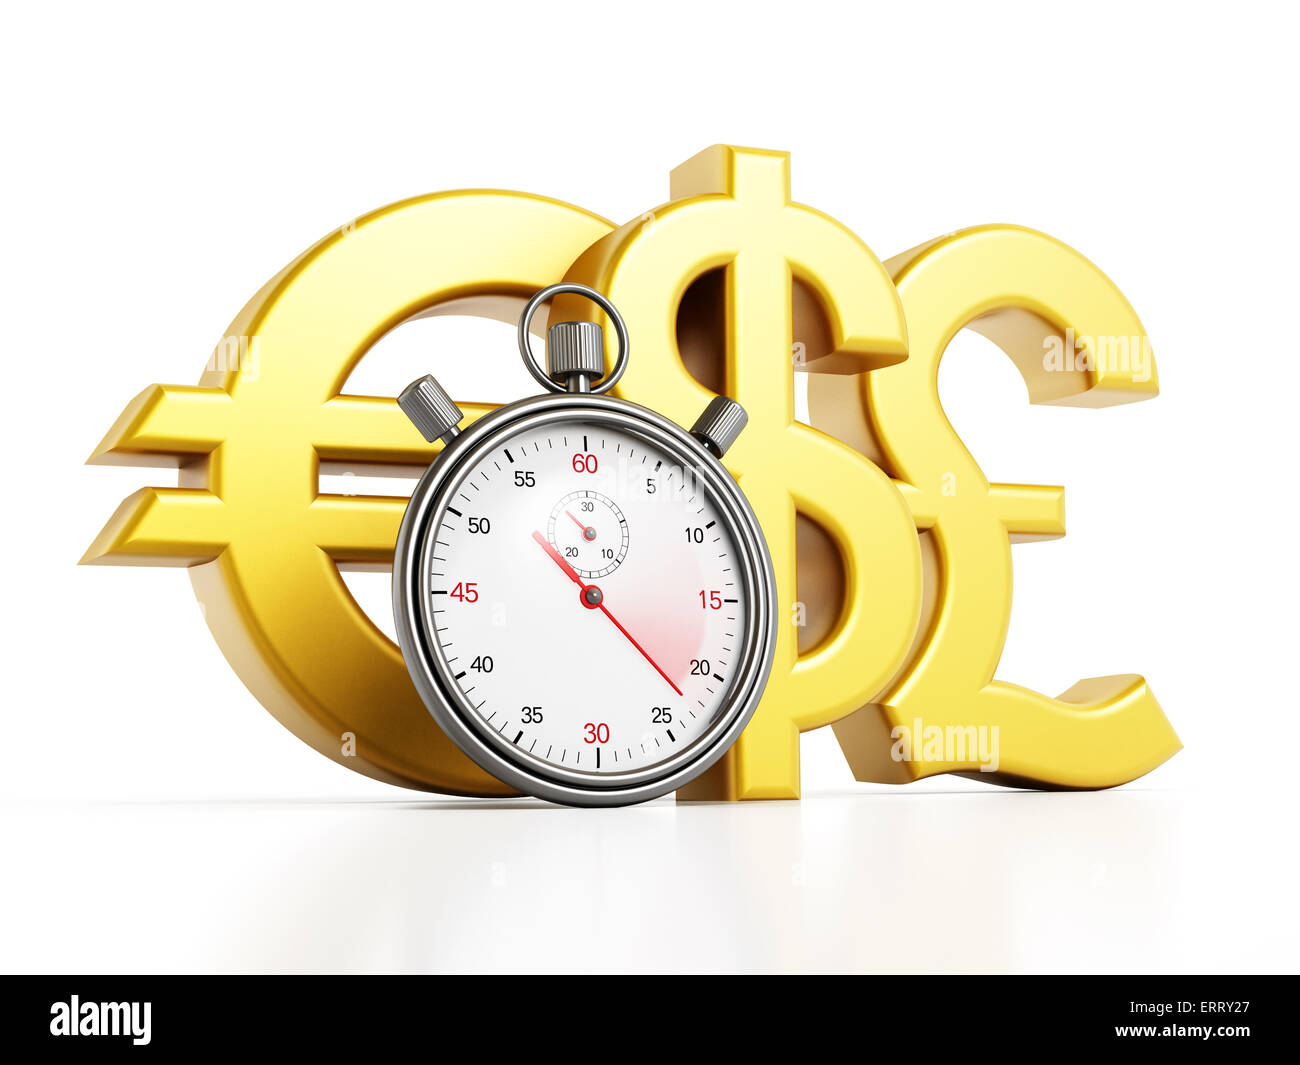 Analogue chronometer, dollar,euro and pound symbols isolated on white background Stock Photo